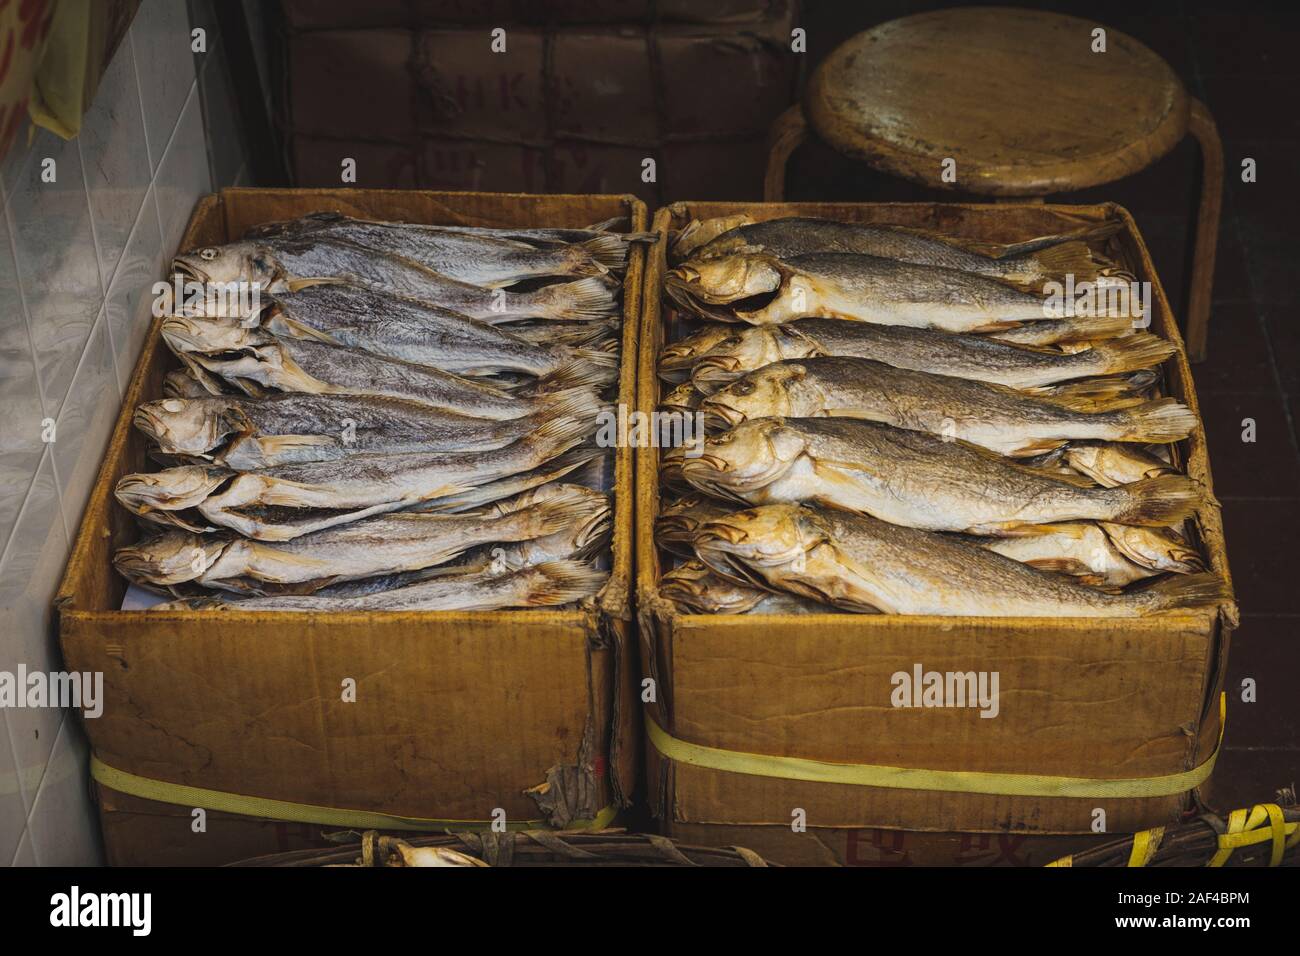 Los peces en cajas, pescado seco en la calle en el mercado de alimentos Foto de stock